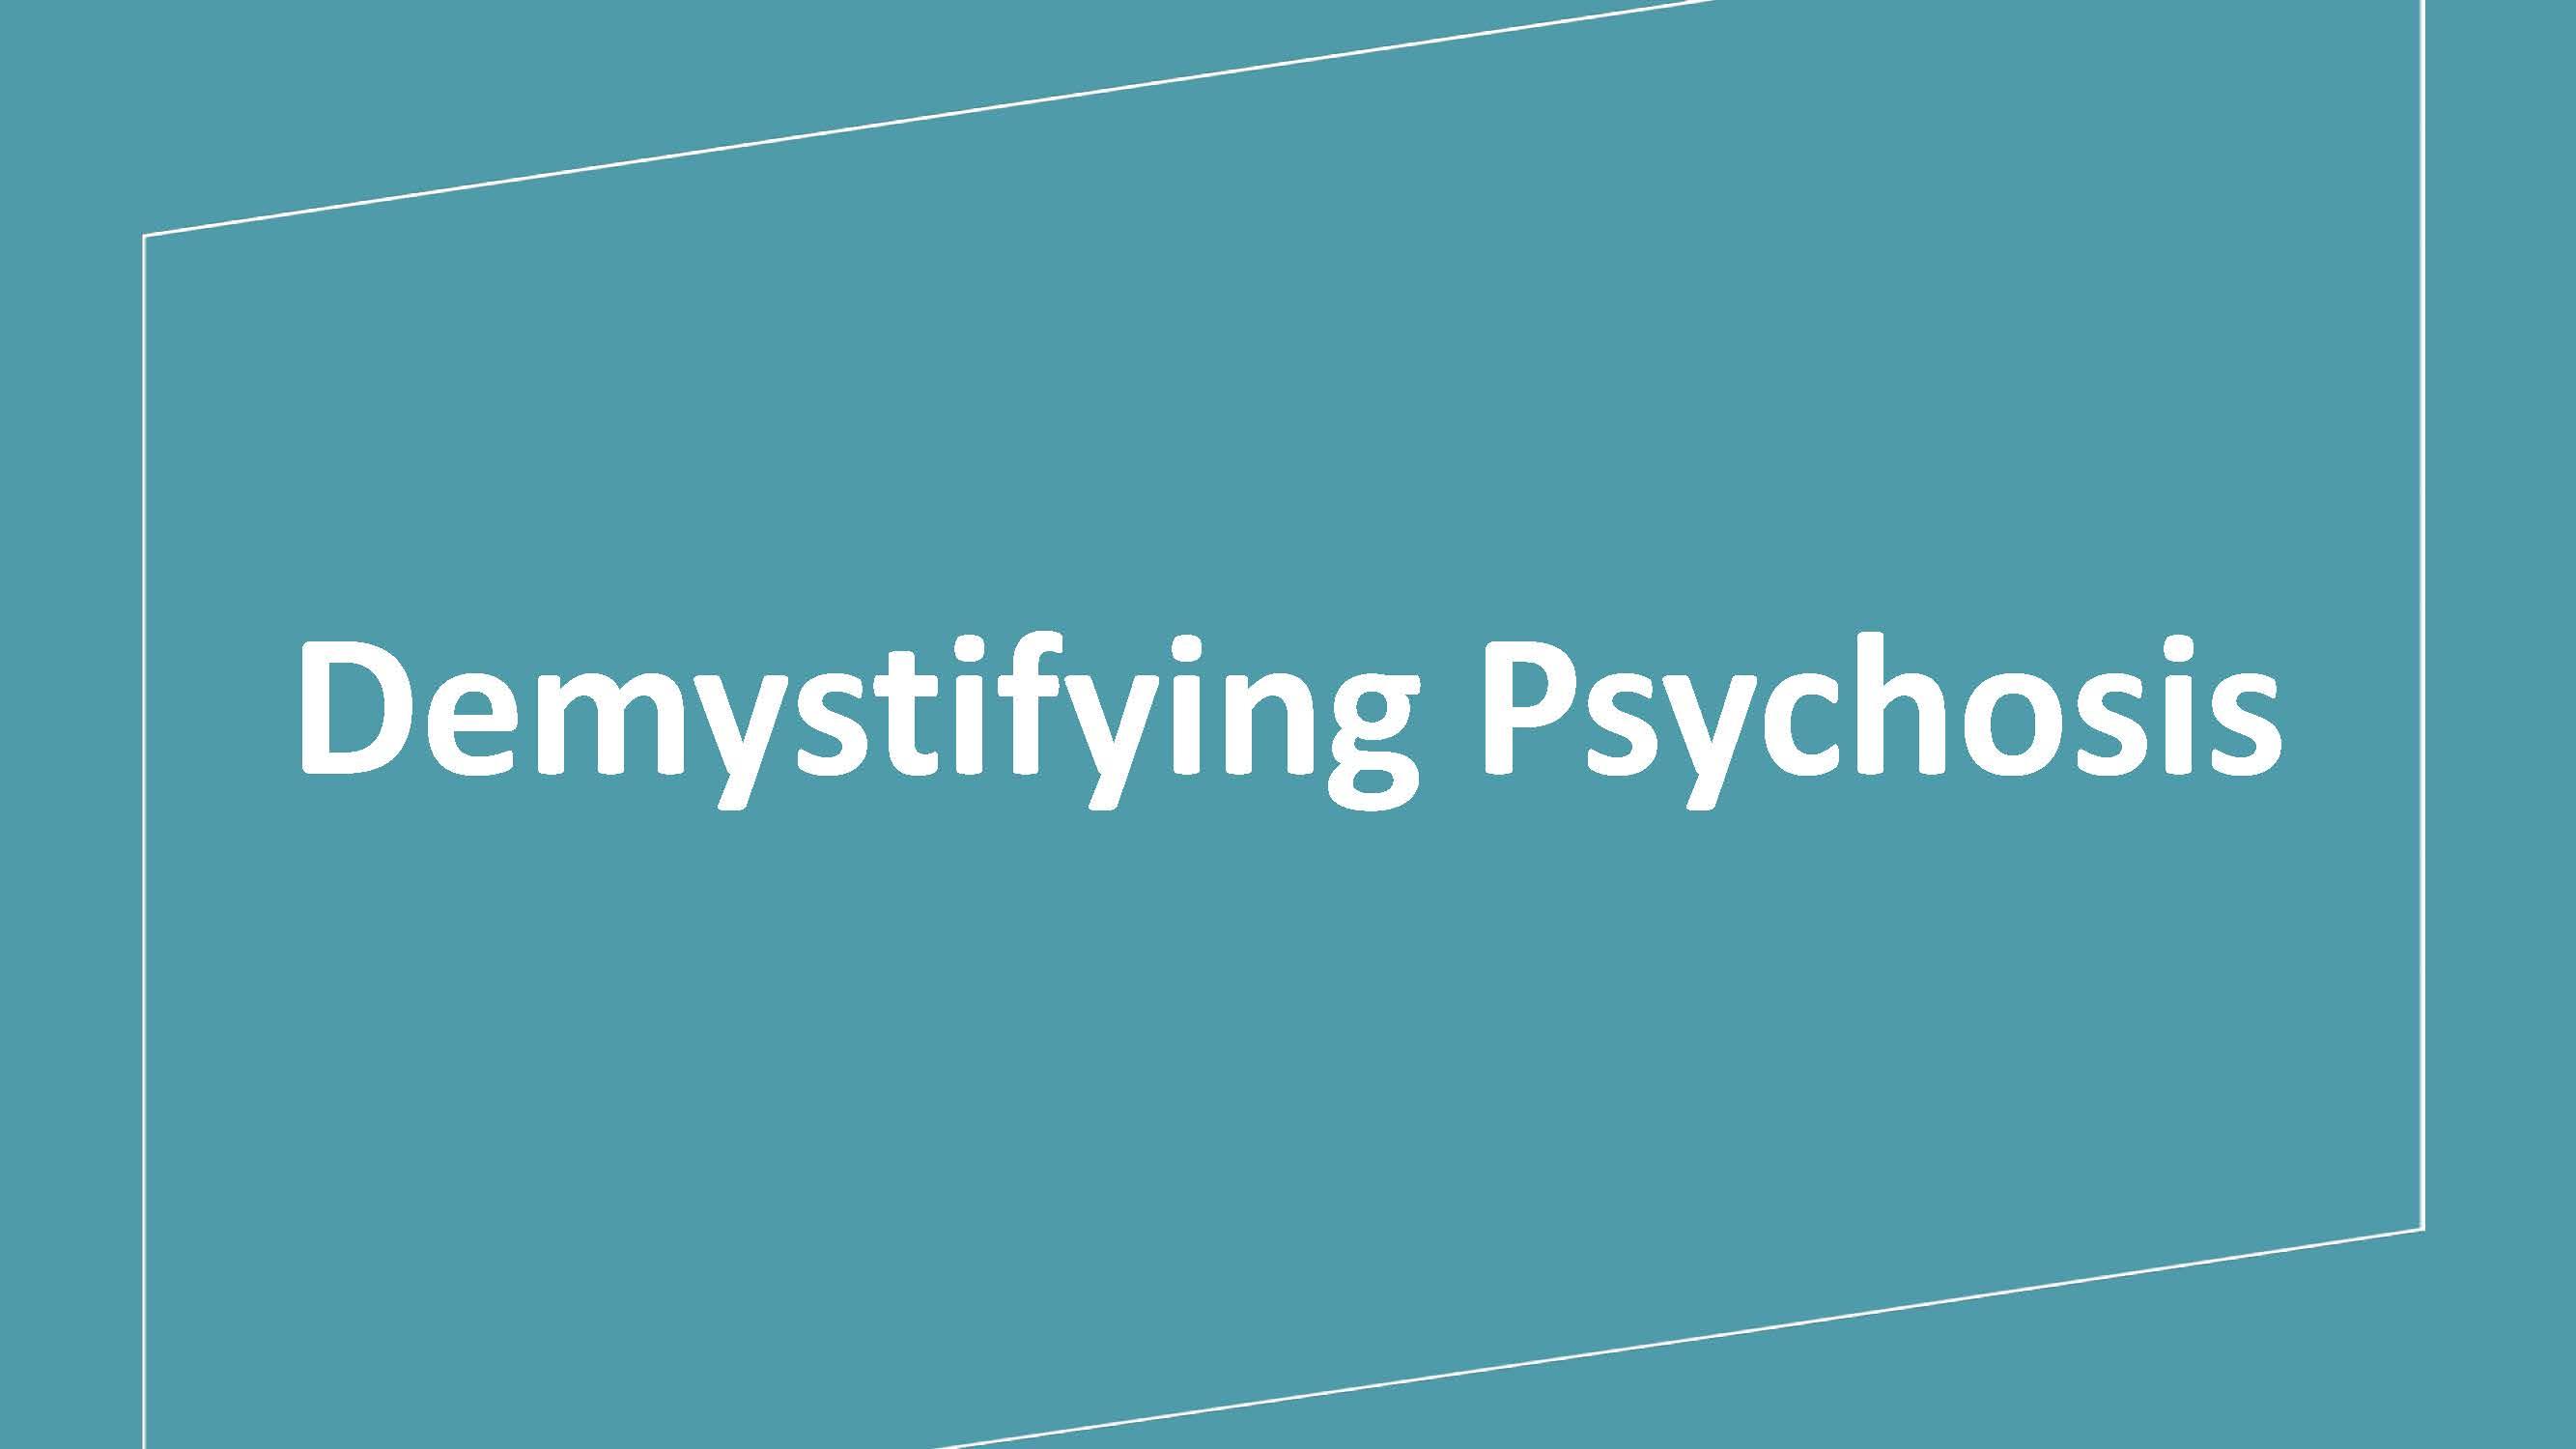 Demystifying Psychosis